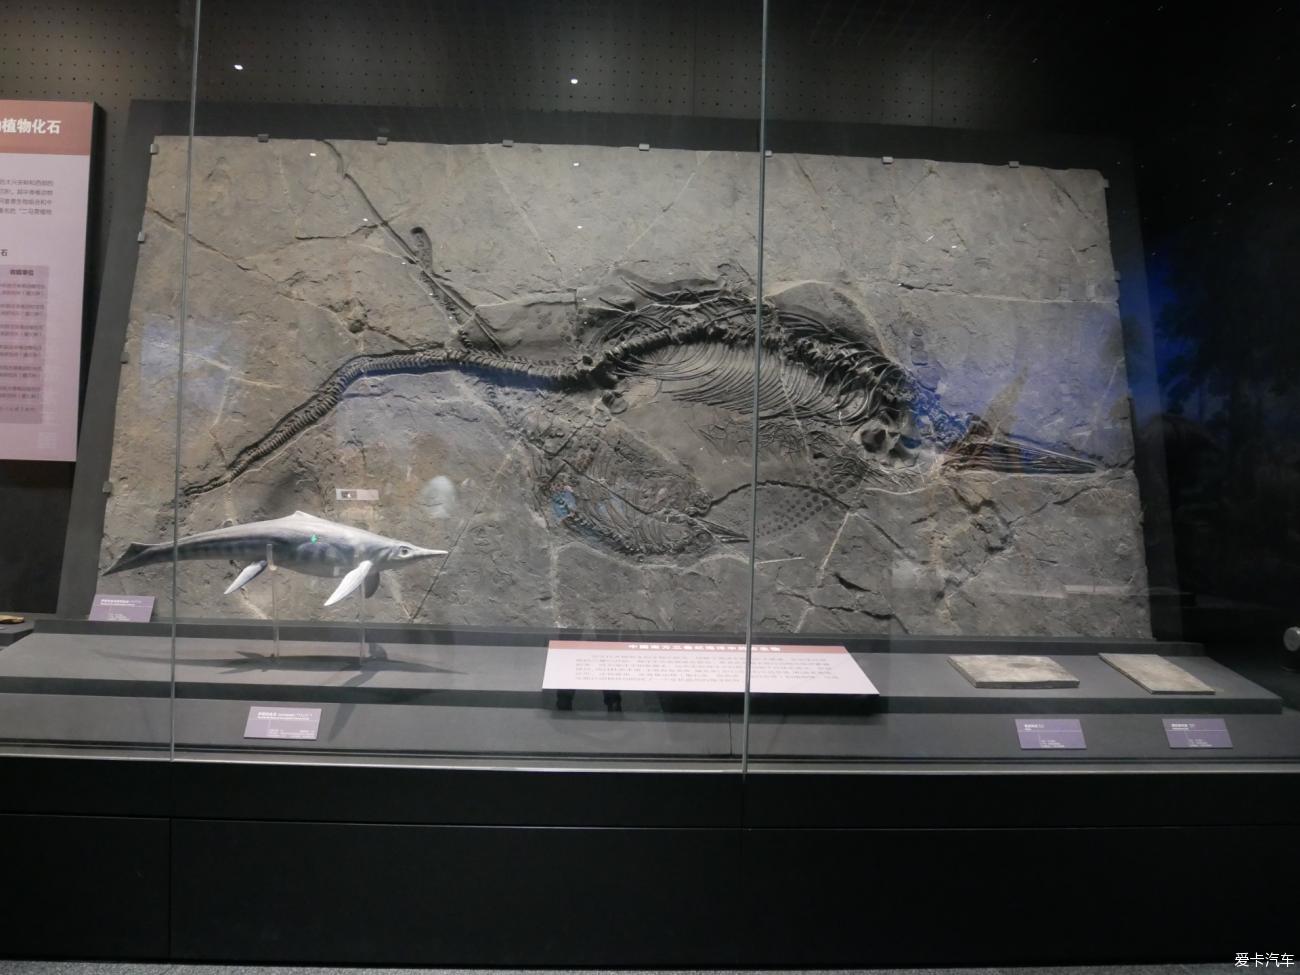 这个鱼龙化石真漂亮